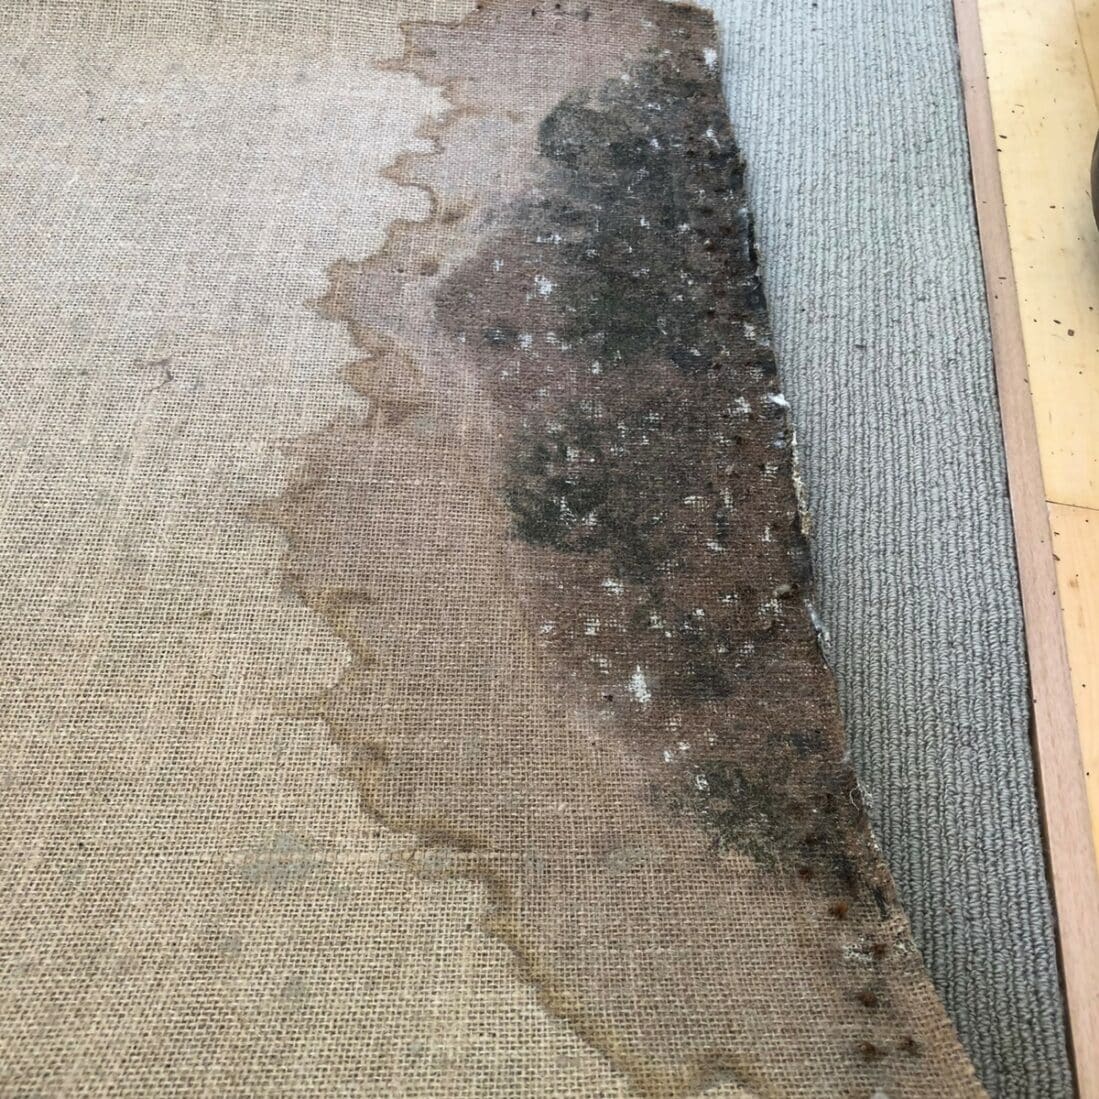 Water Damage To Carpet